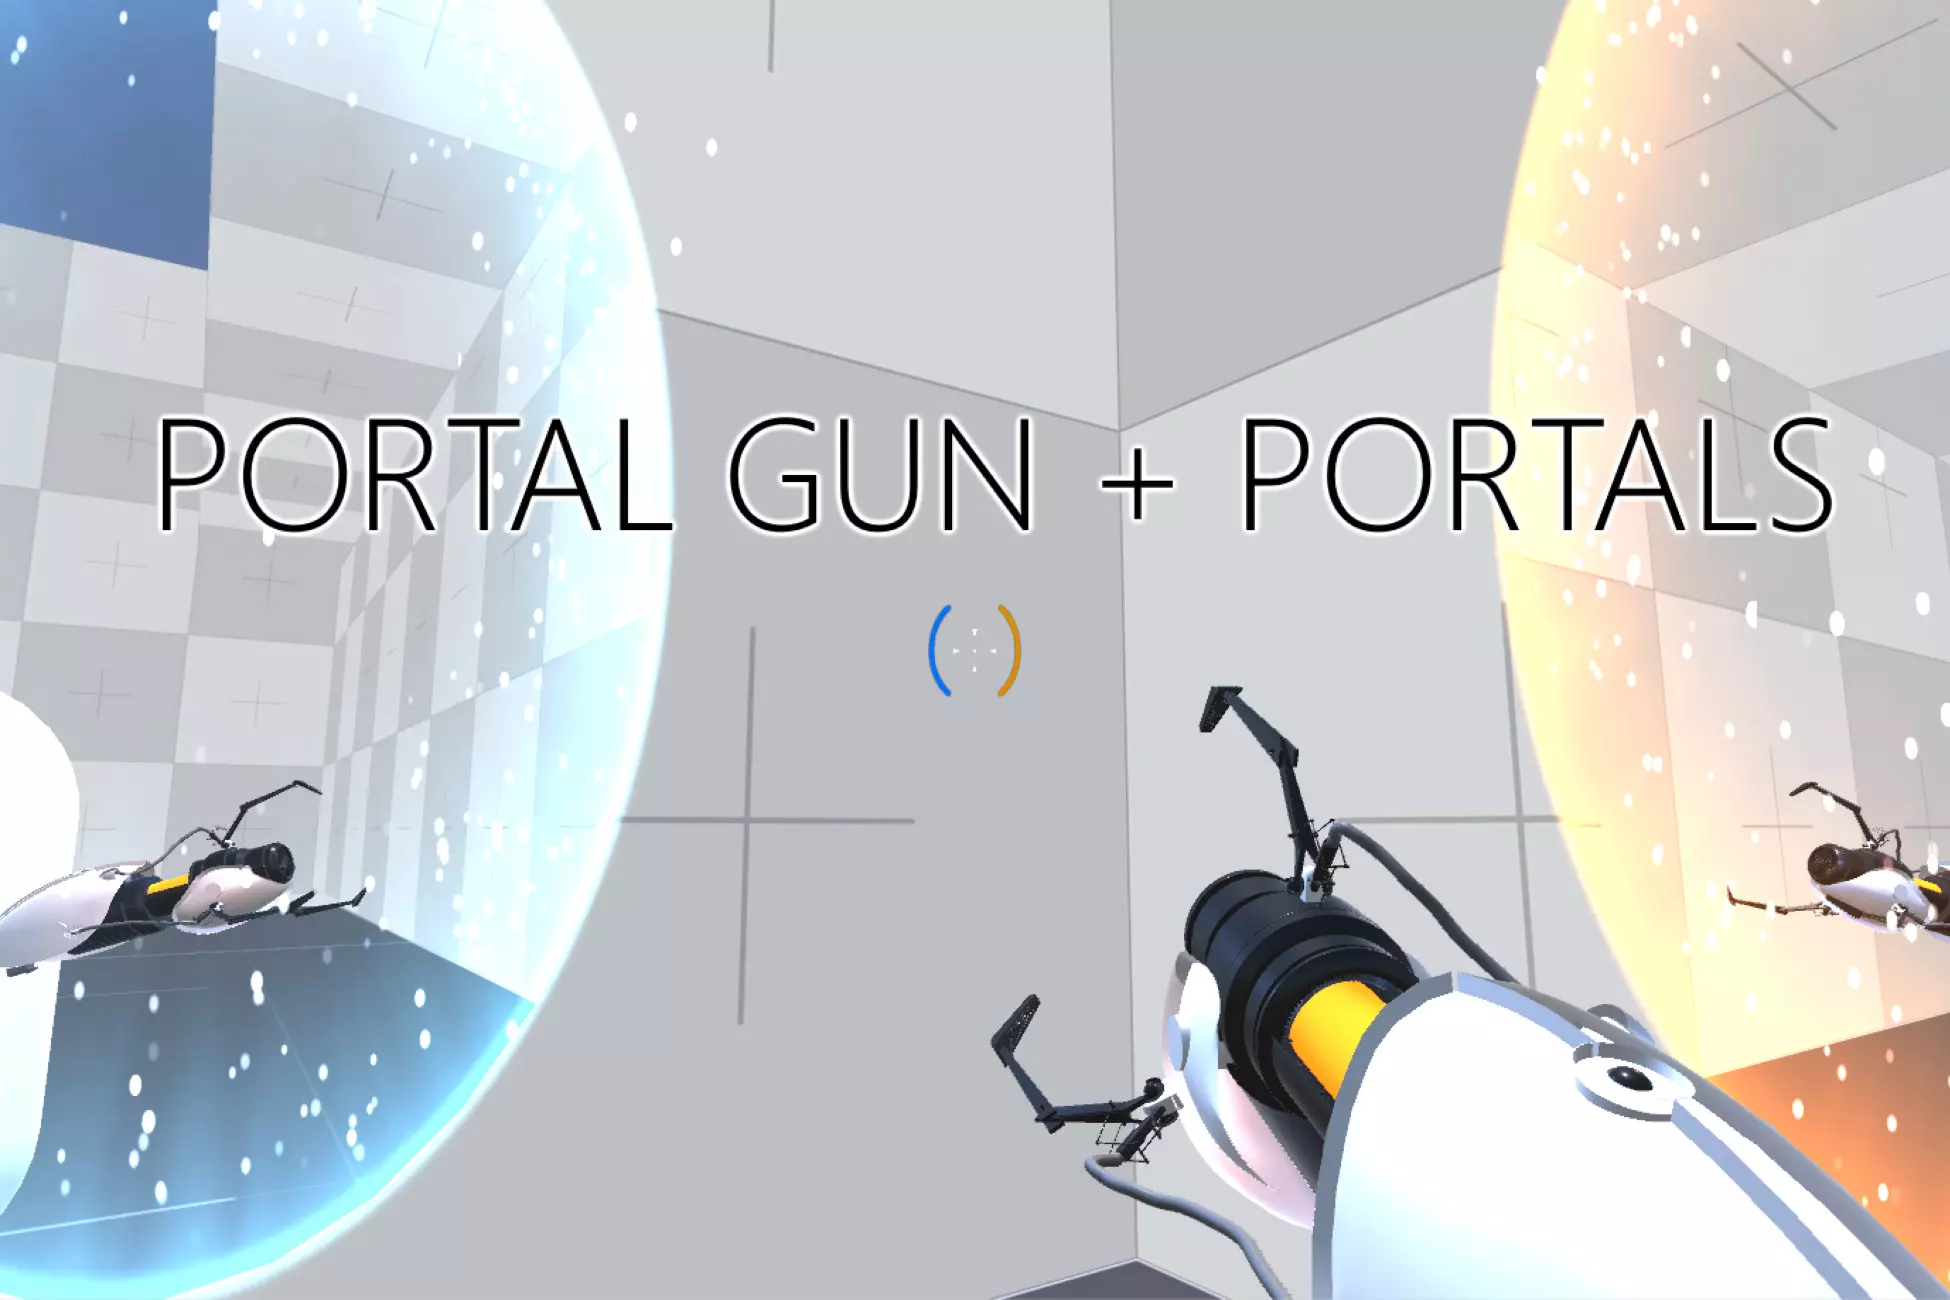 Portals + Portal Gun: Unity Asset